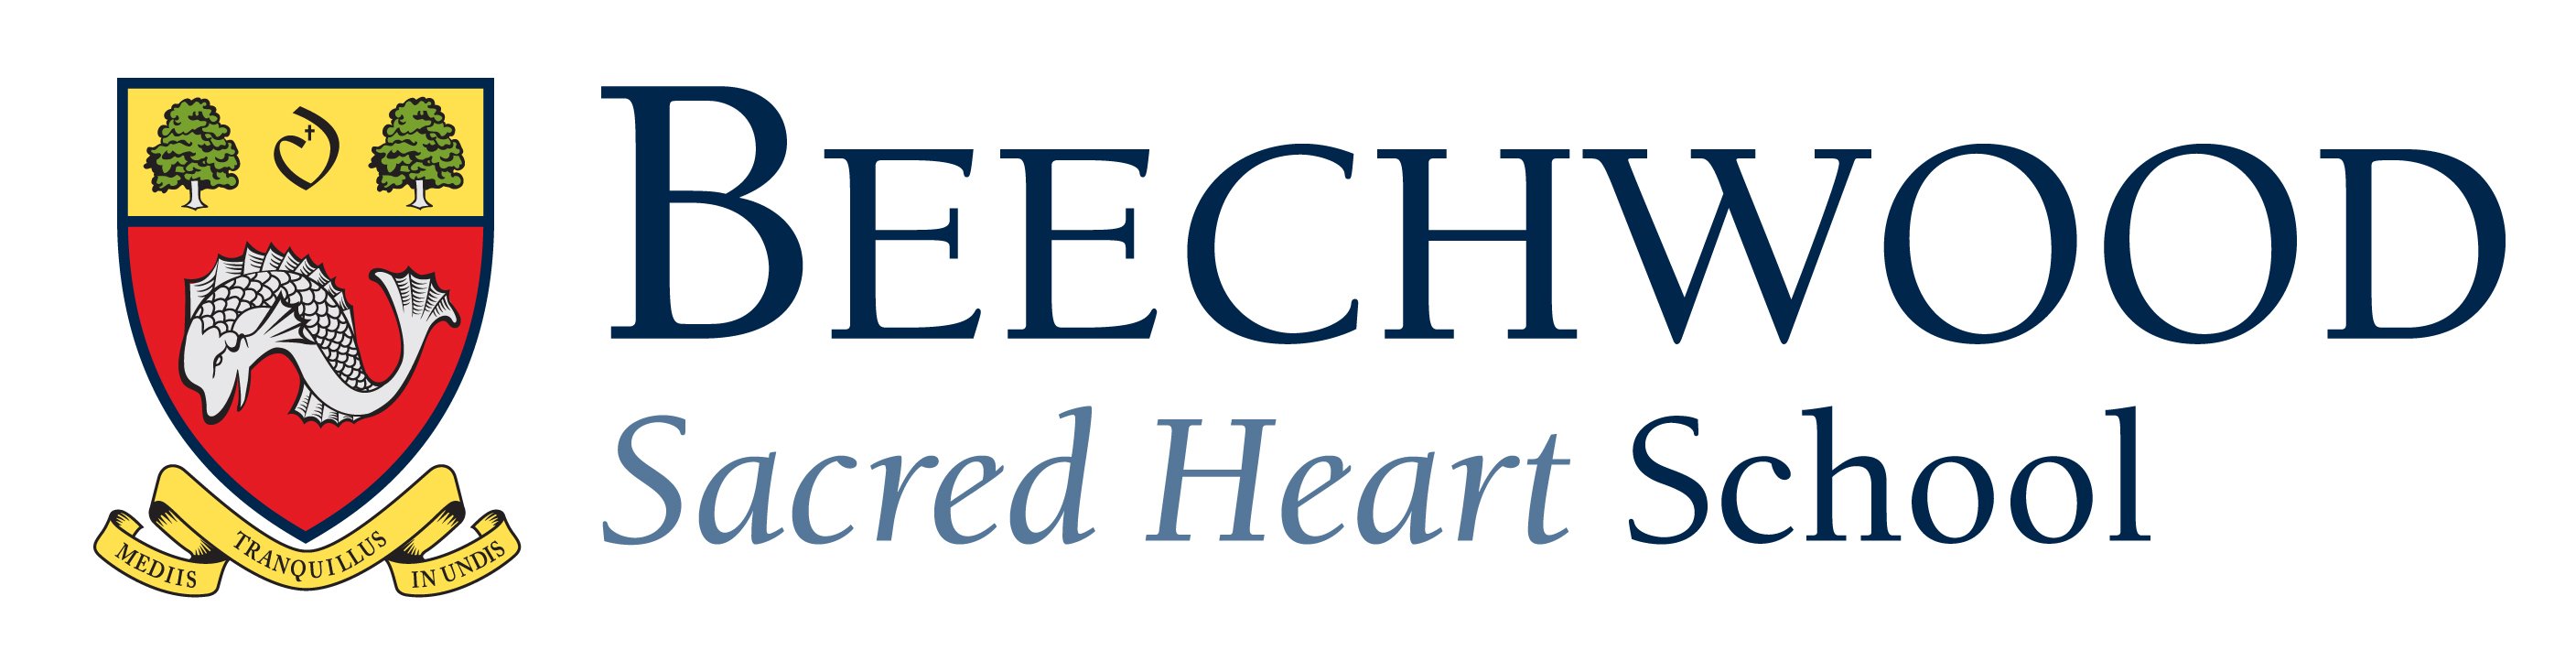 Beechwood Sacred Heart School